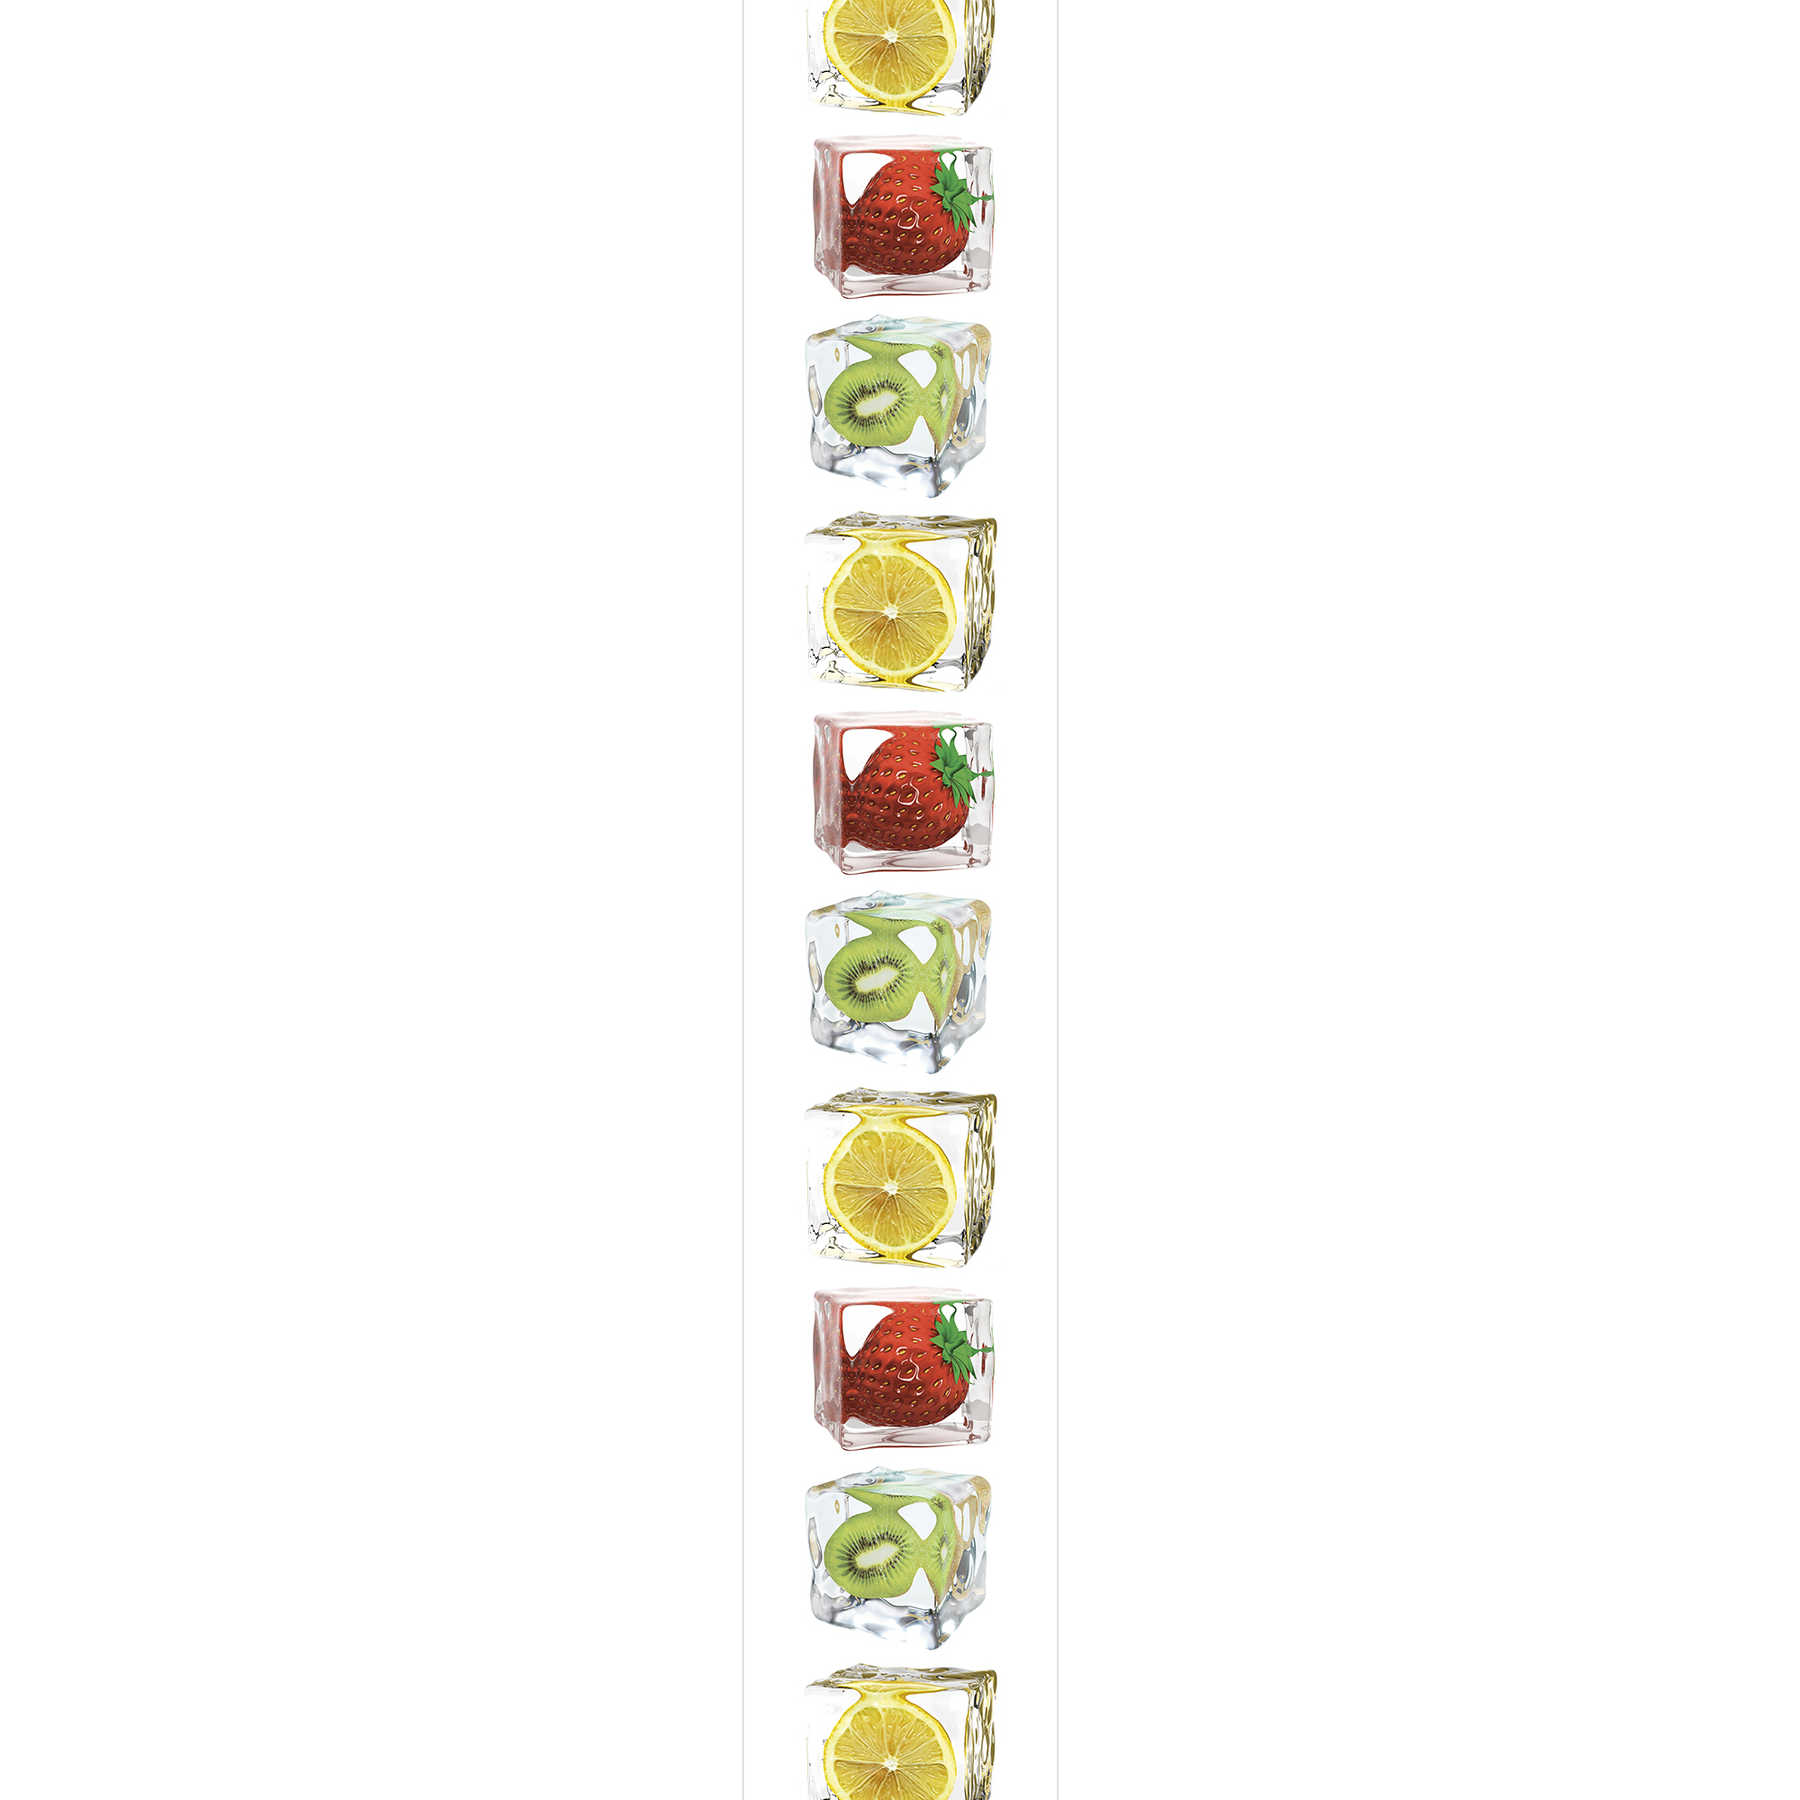         Küchentapete mit Obst in leuchtenden Farben – Bunt, weiß, Gelb, Rot
    